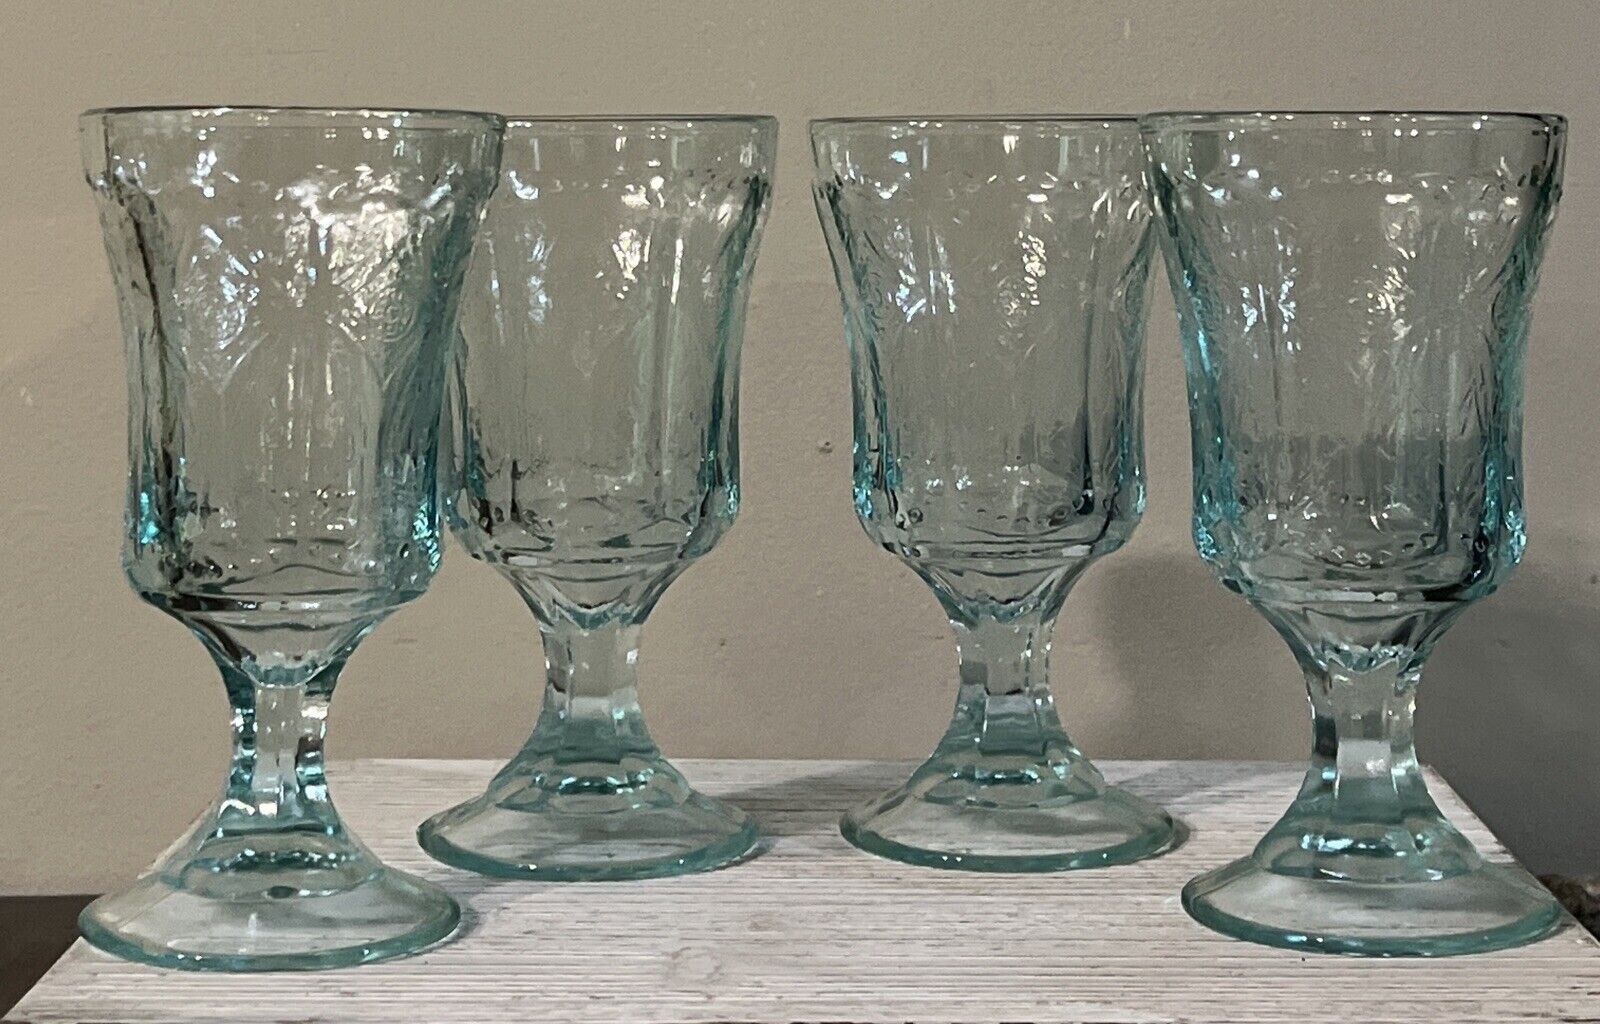 4 Federal Madrid Depression Glasses Vintage Teal Indiana Glass Co 1932-39